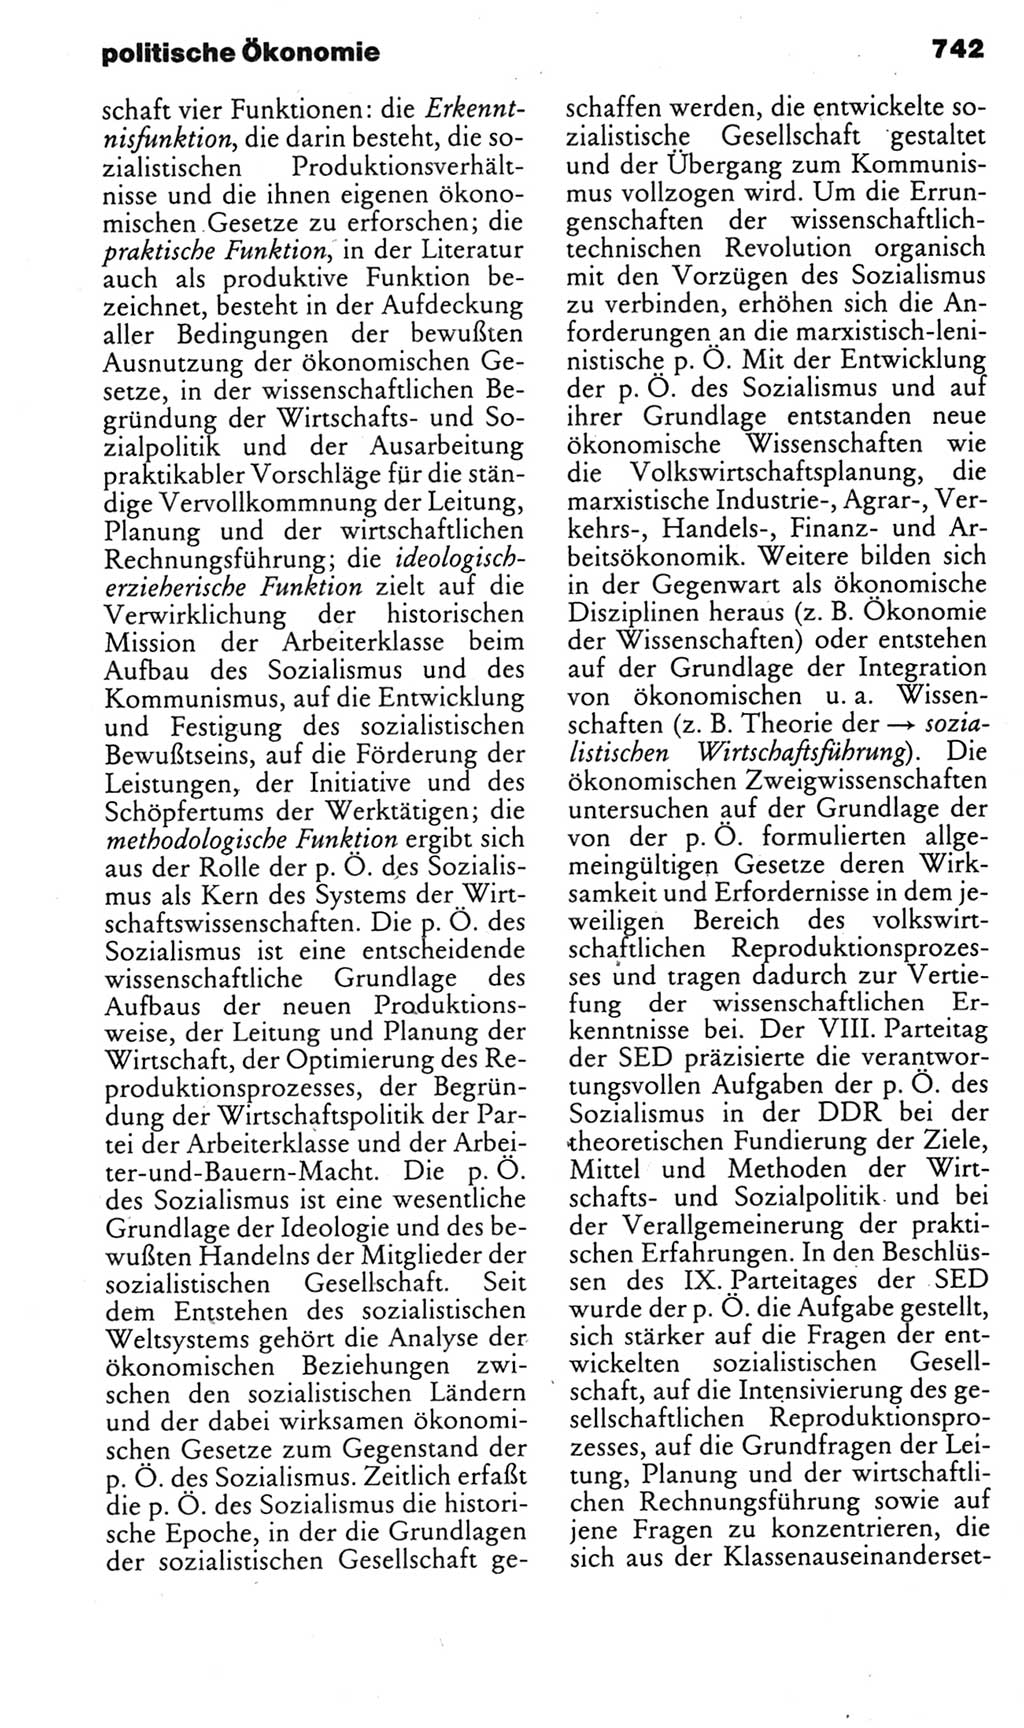 Kleines politisches Wörterbuch [Deutsche Demokratische Republik (DDR)] 1985, Seite 742 (Kl. pol. Wb. DDR 1985, S. 742)